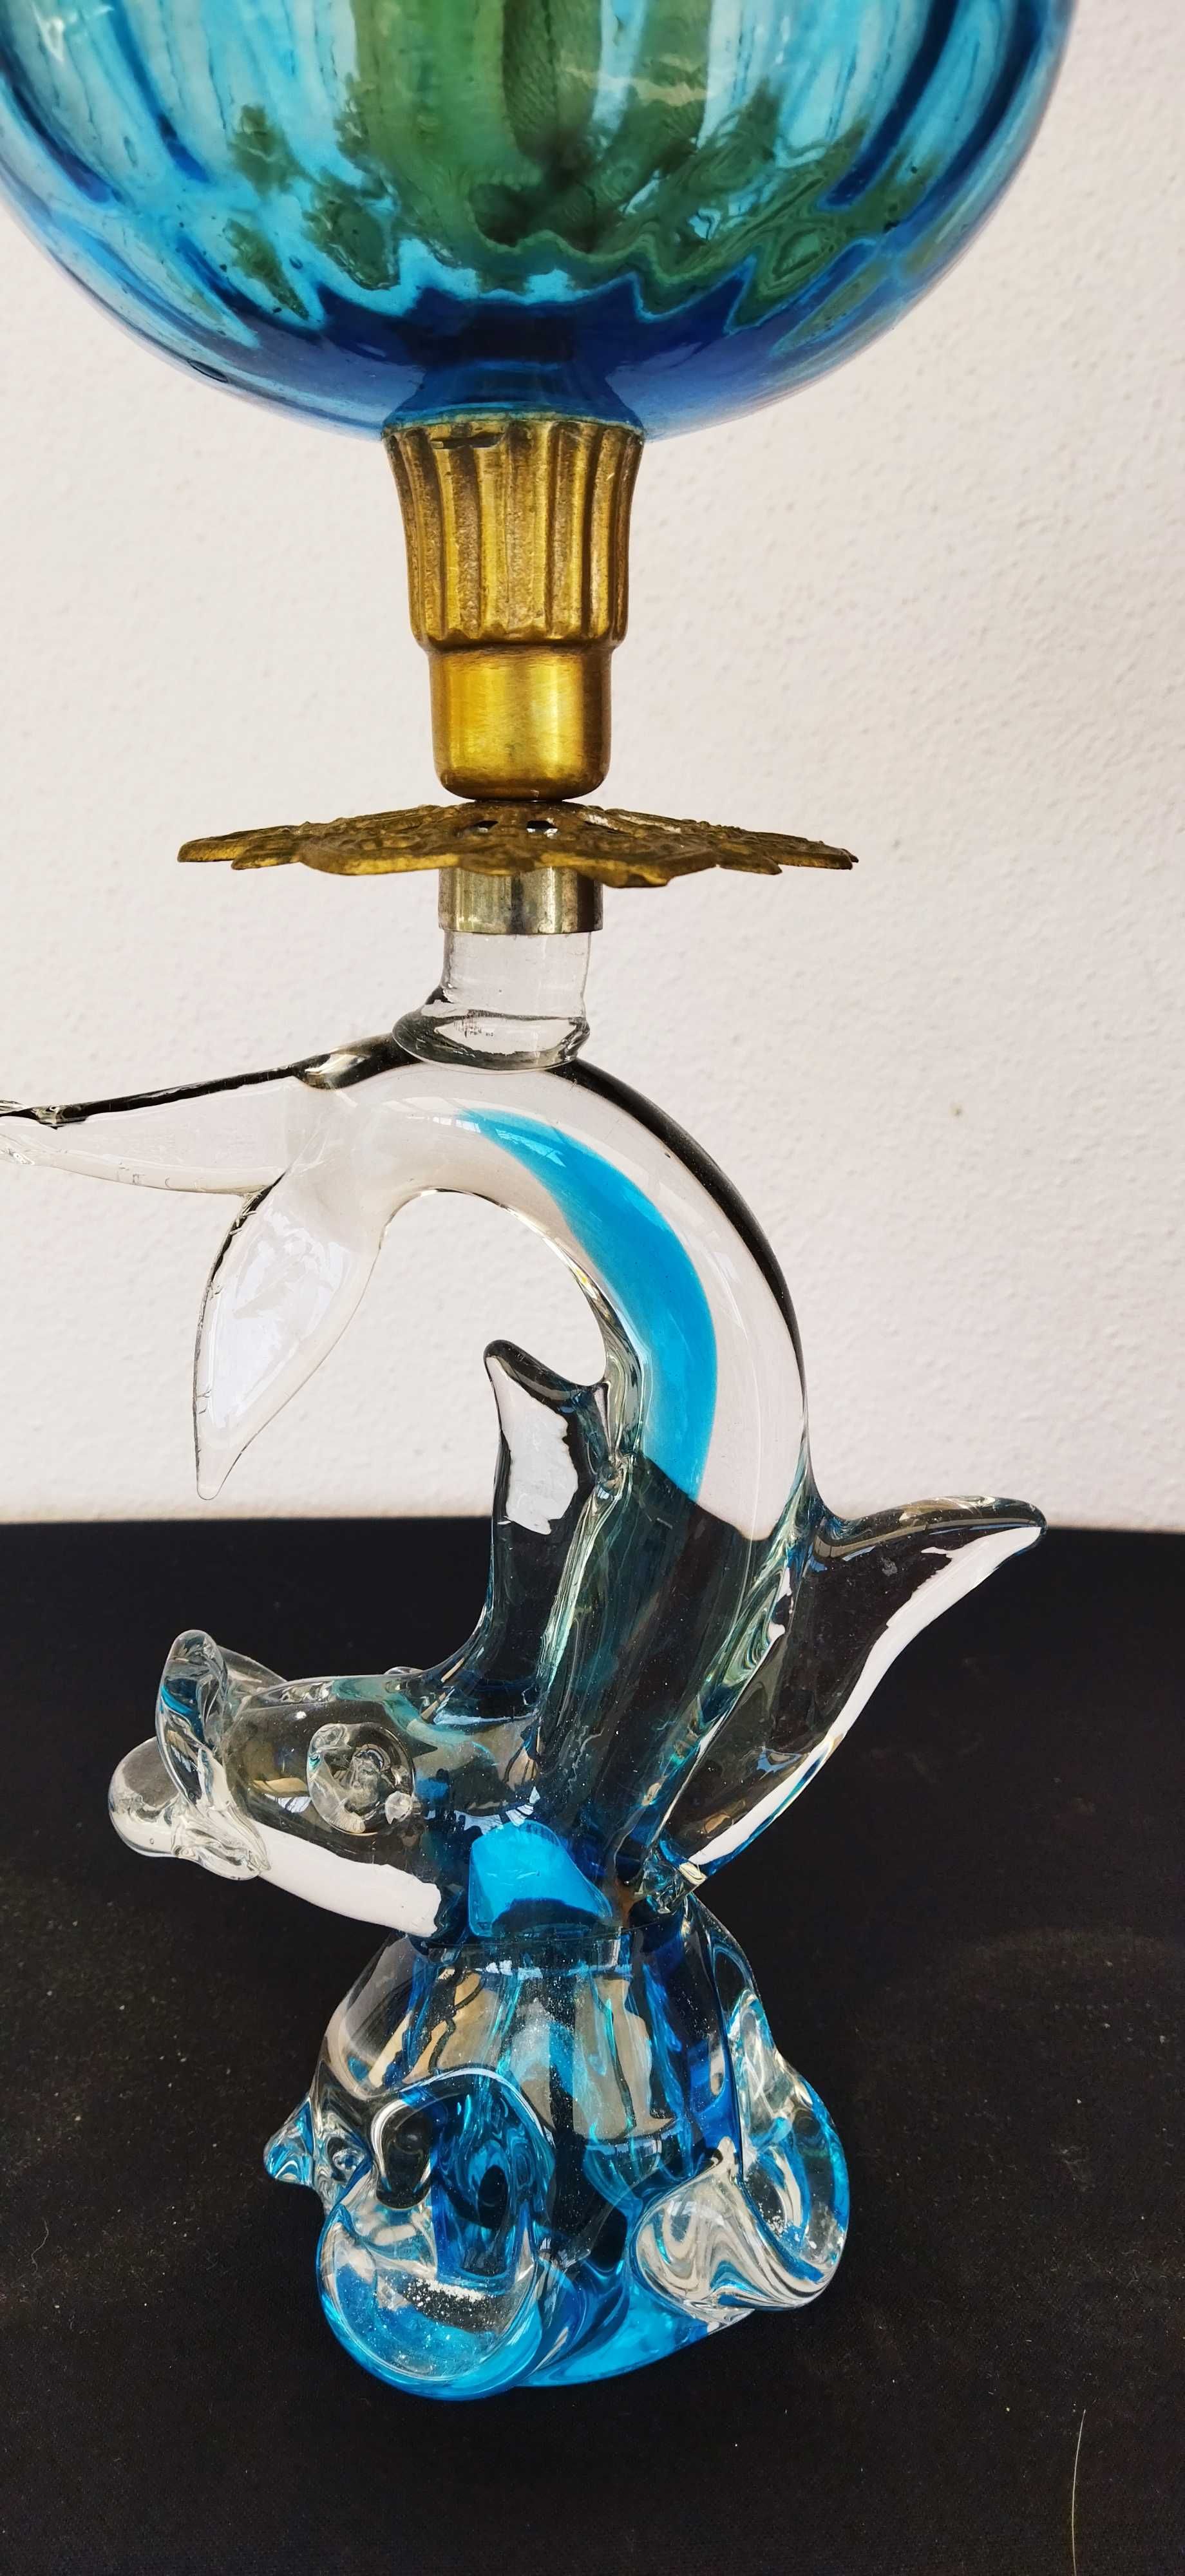 Лампа керосиновая.Голубая рыба.Хрусталь ,стекло,бронза.65х15.Франция